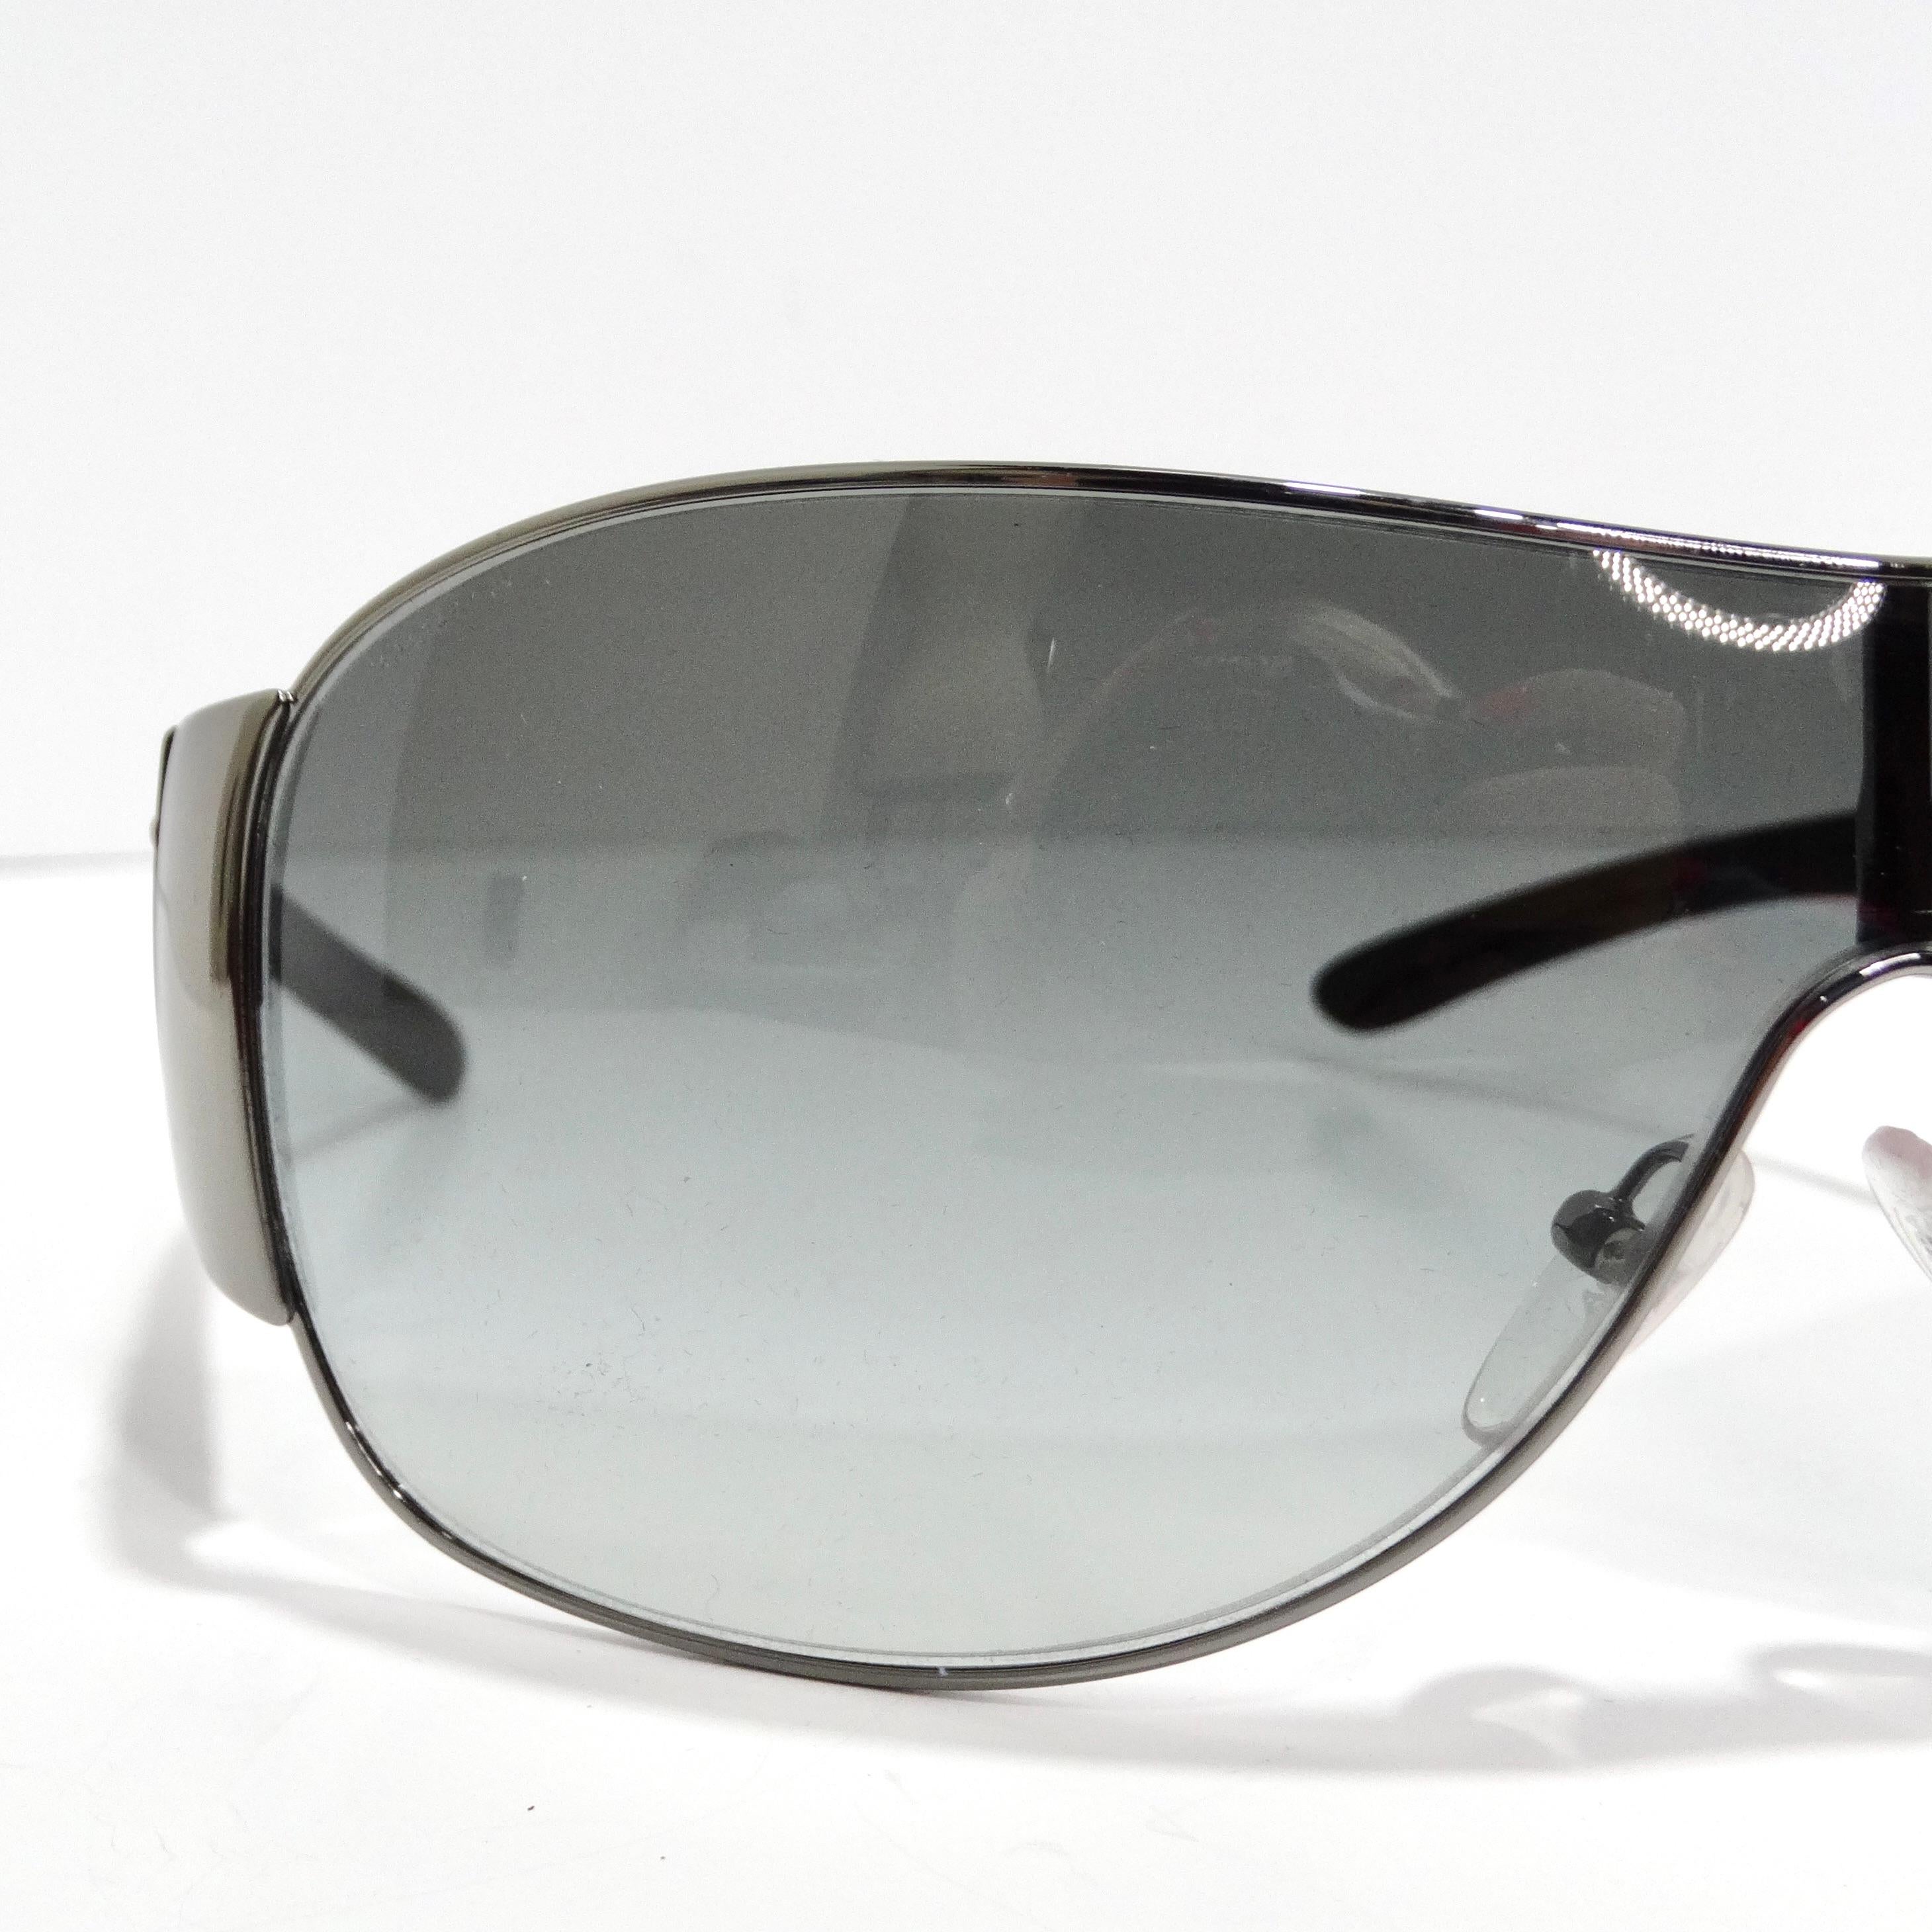 Die Prada 1990s Black Shield Sonnenbrille ist der Inbegriff des 1990er-Chics. Diese klassische Sonnenbrille im Shield-Stil verfügt über dünne silberfarbene Ränder, schlichte schwarze Bügel mit silberfarbenen Prada-Logos und blau-graue